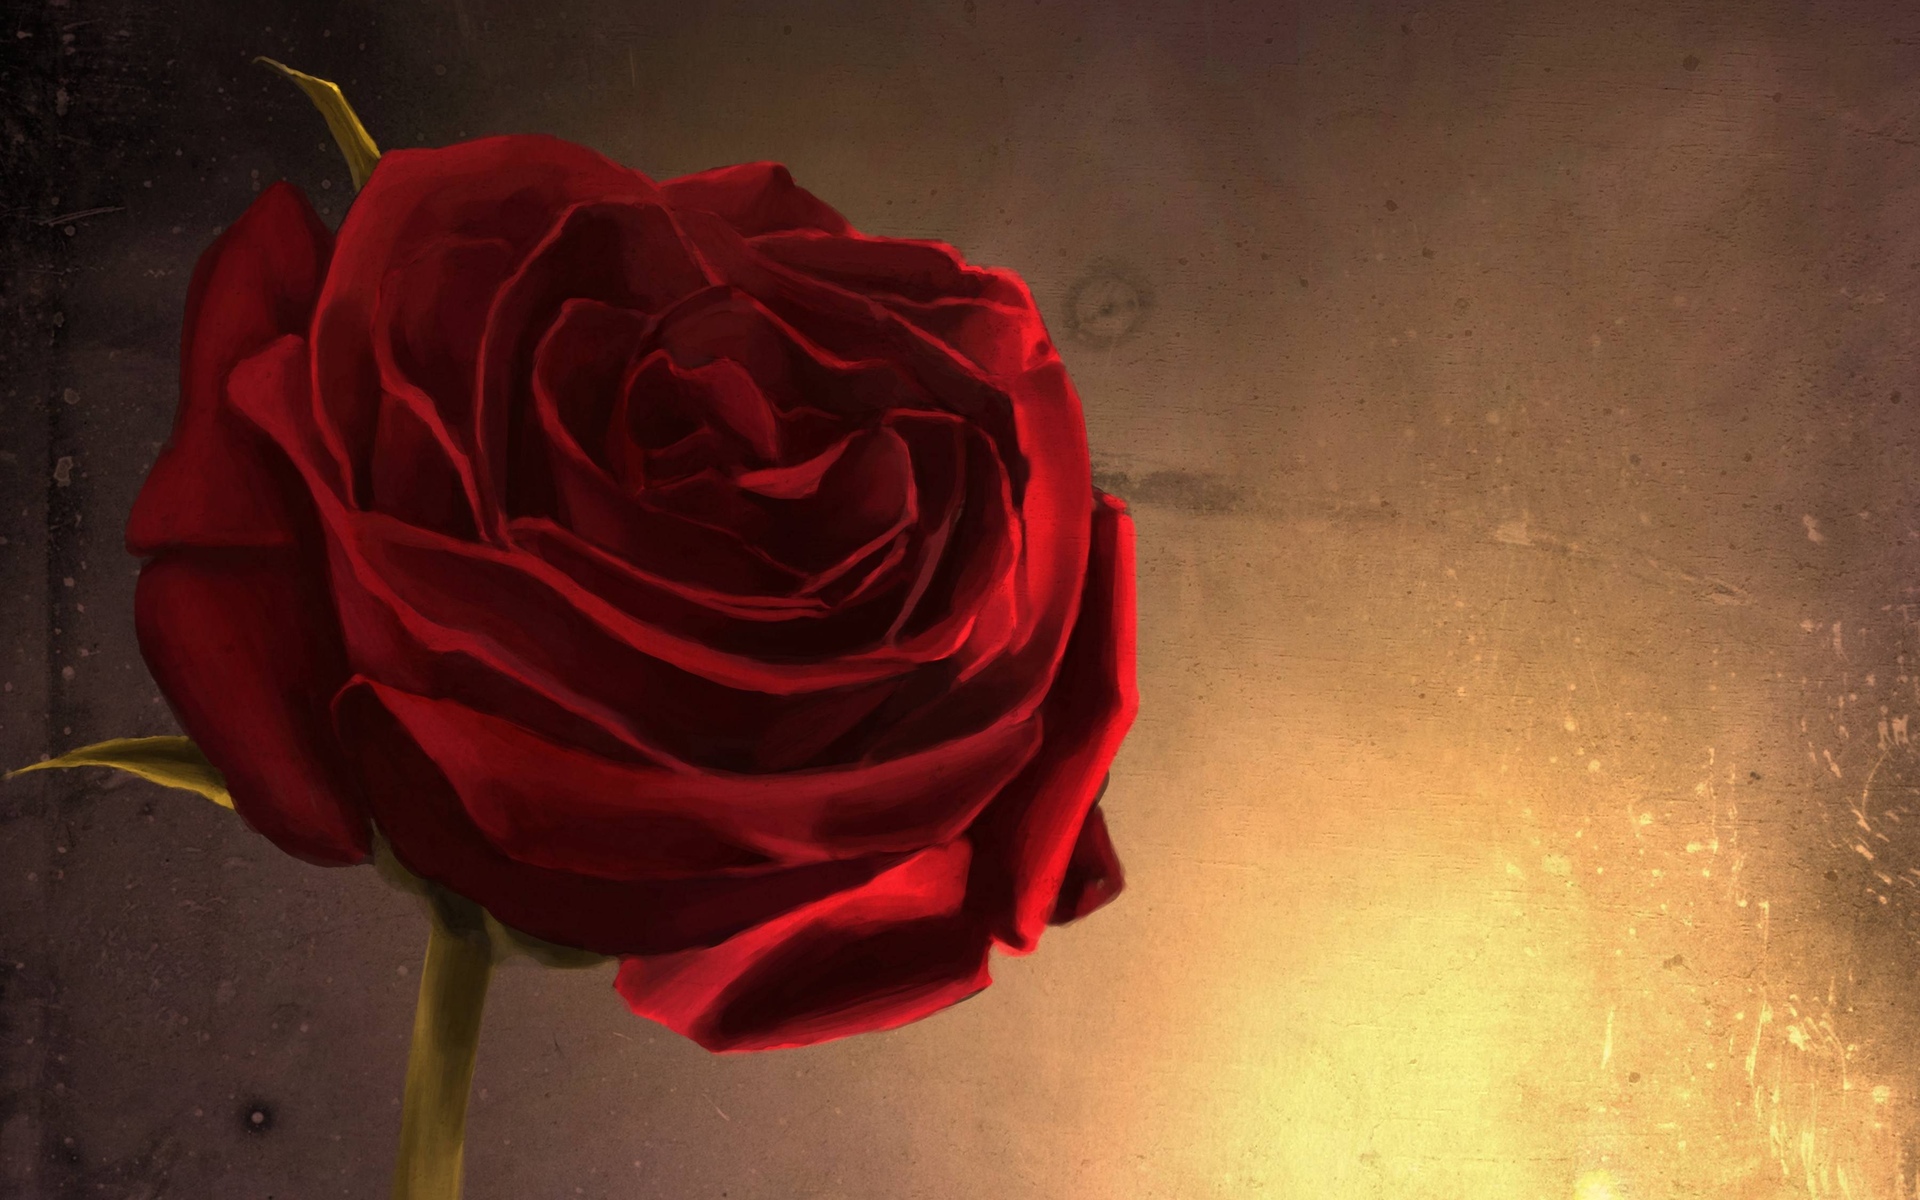 Скачать обои бесплатно Цветок, Роза, Красная Роза, Художественные, Красный Цветок картинка на рабочий стол ПК